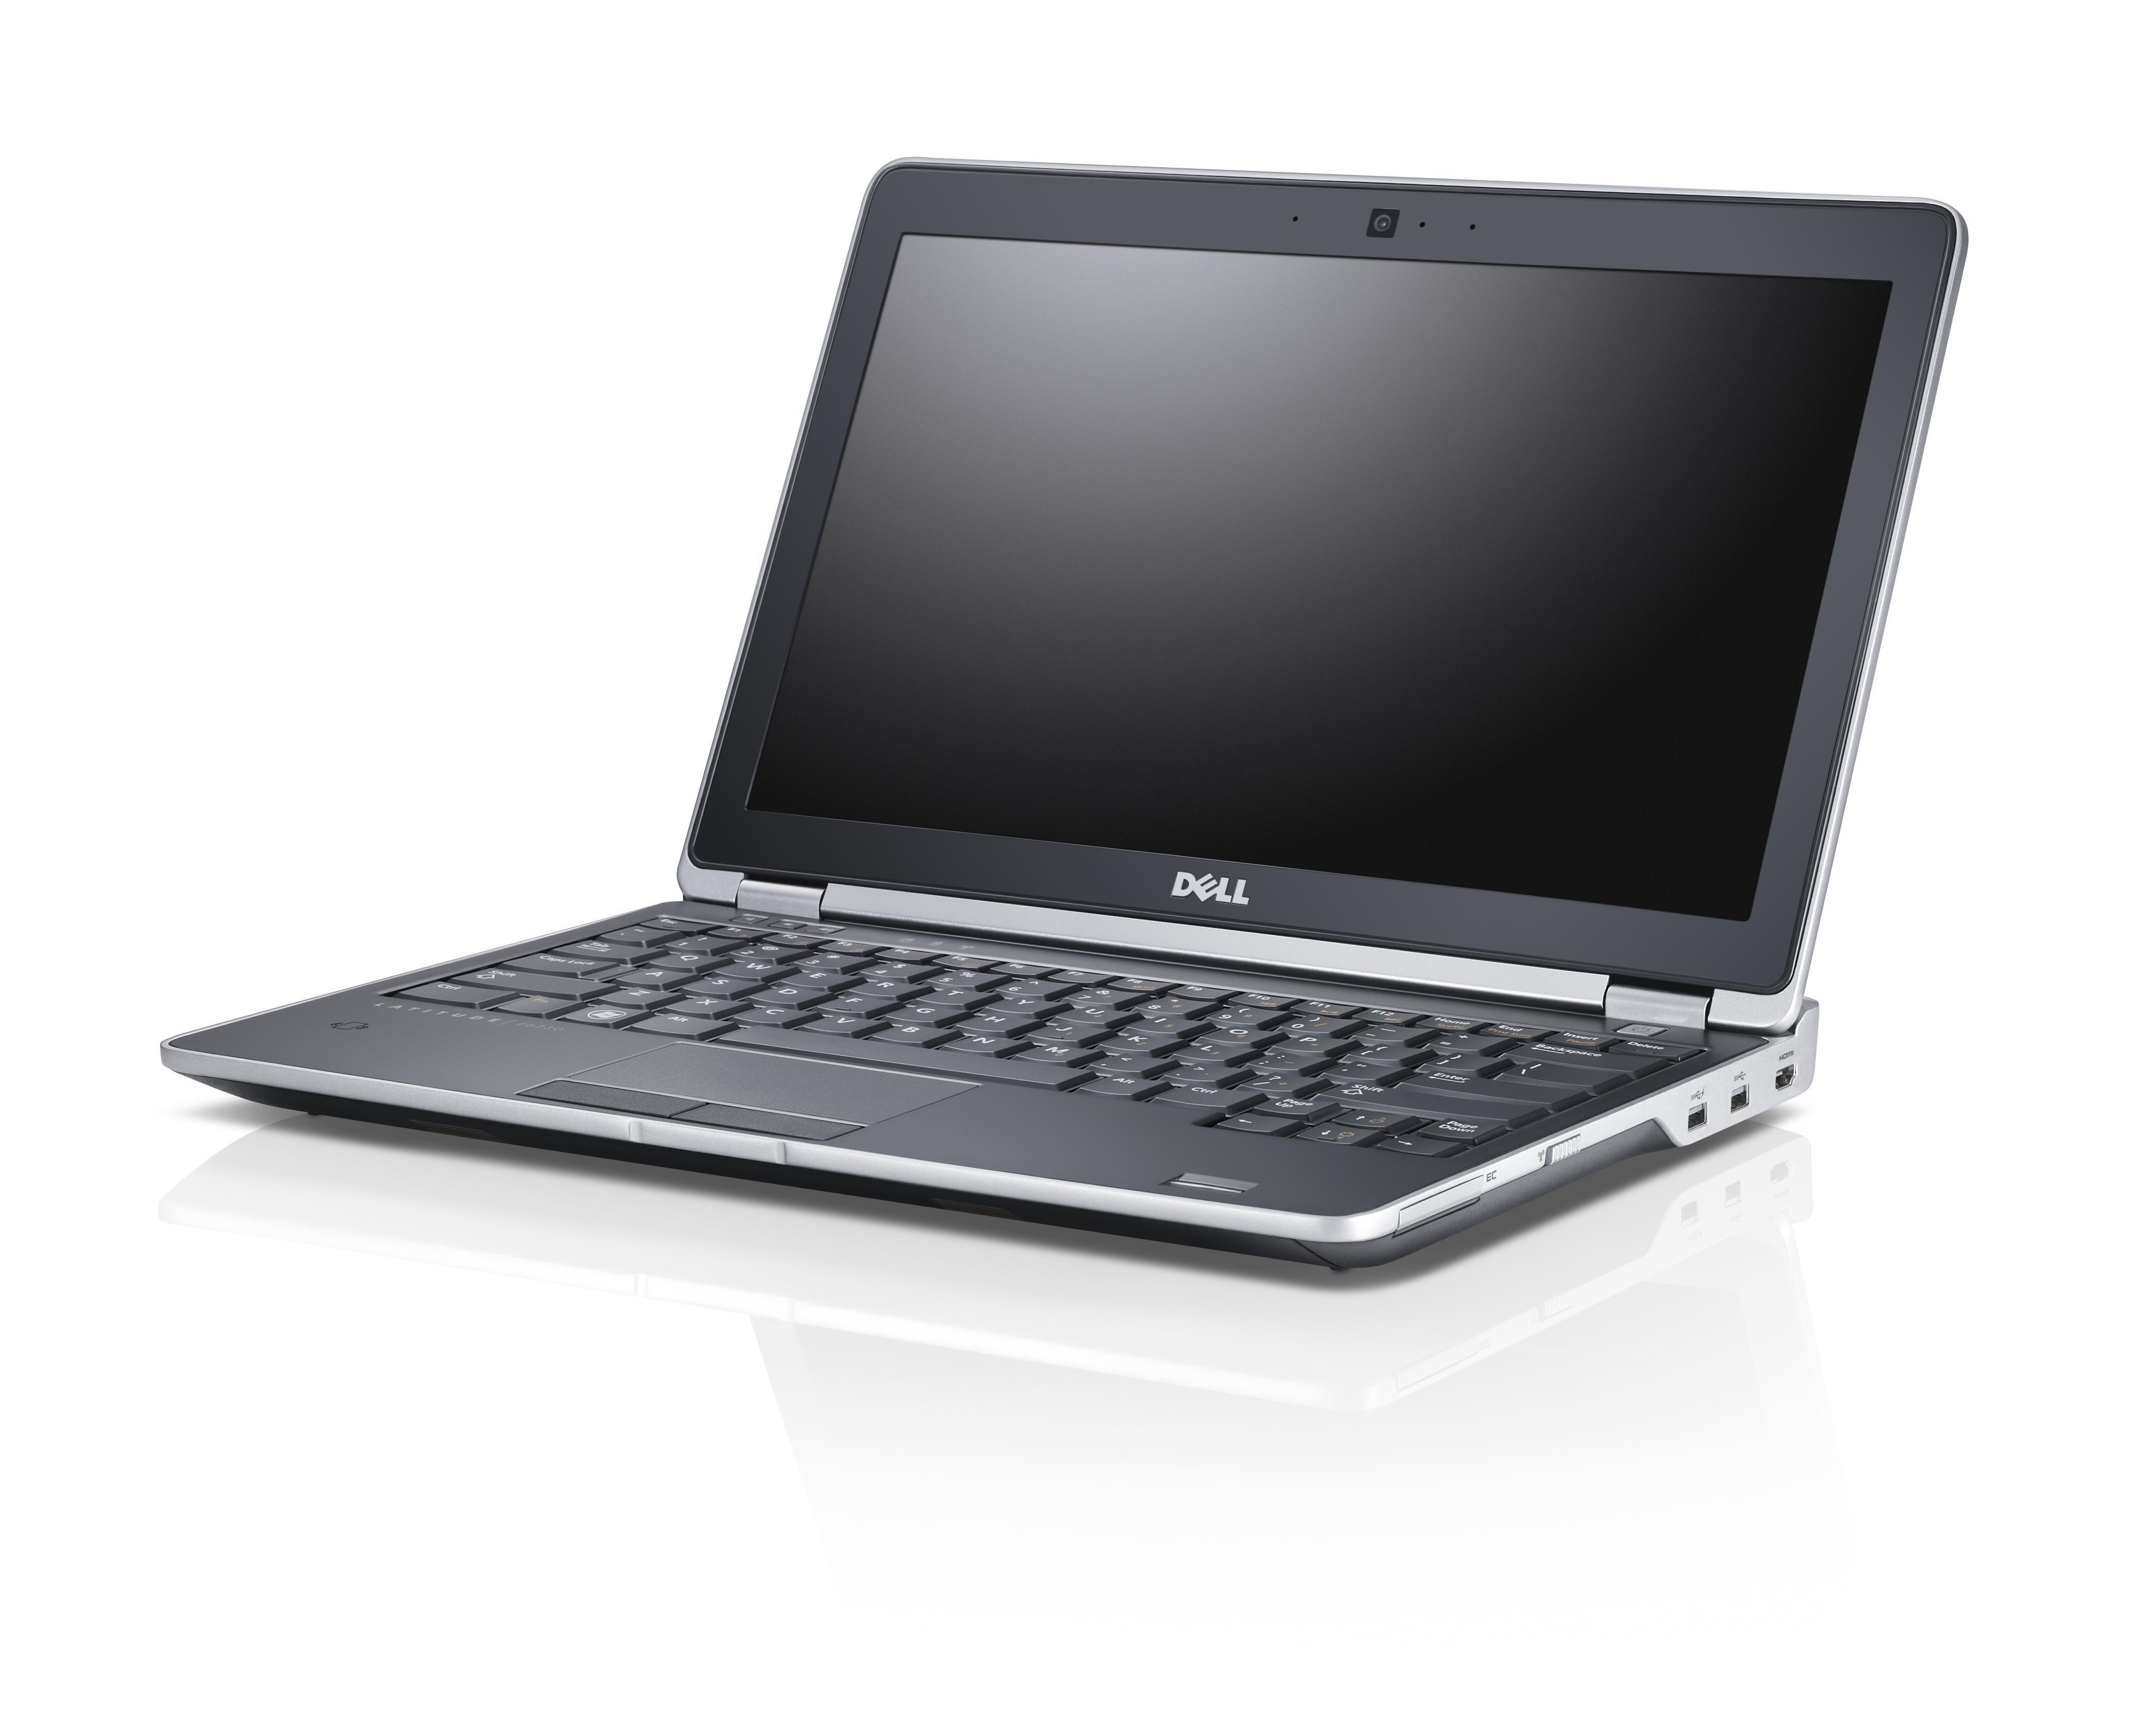 Laptop Dell Latitude E6230 - Intel core i5 - 2520M 2.5GHz, 4GB Ram, 250GB Sata, Intel HD 3000 graphics, 13.3 inch